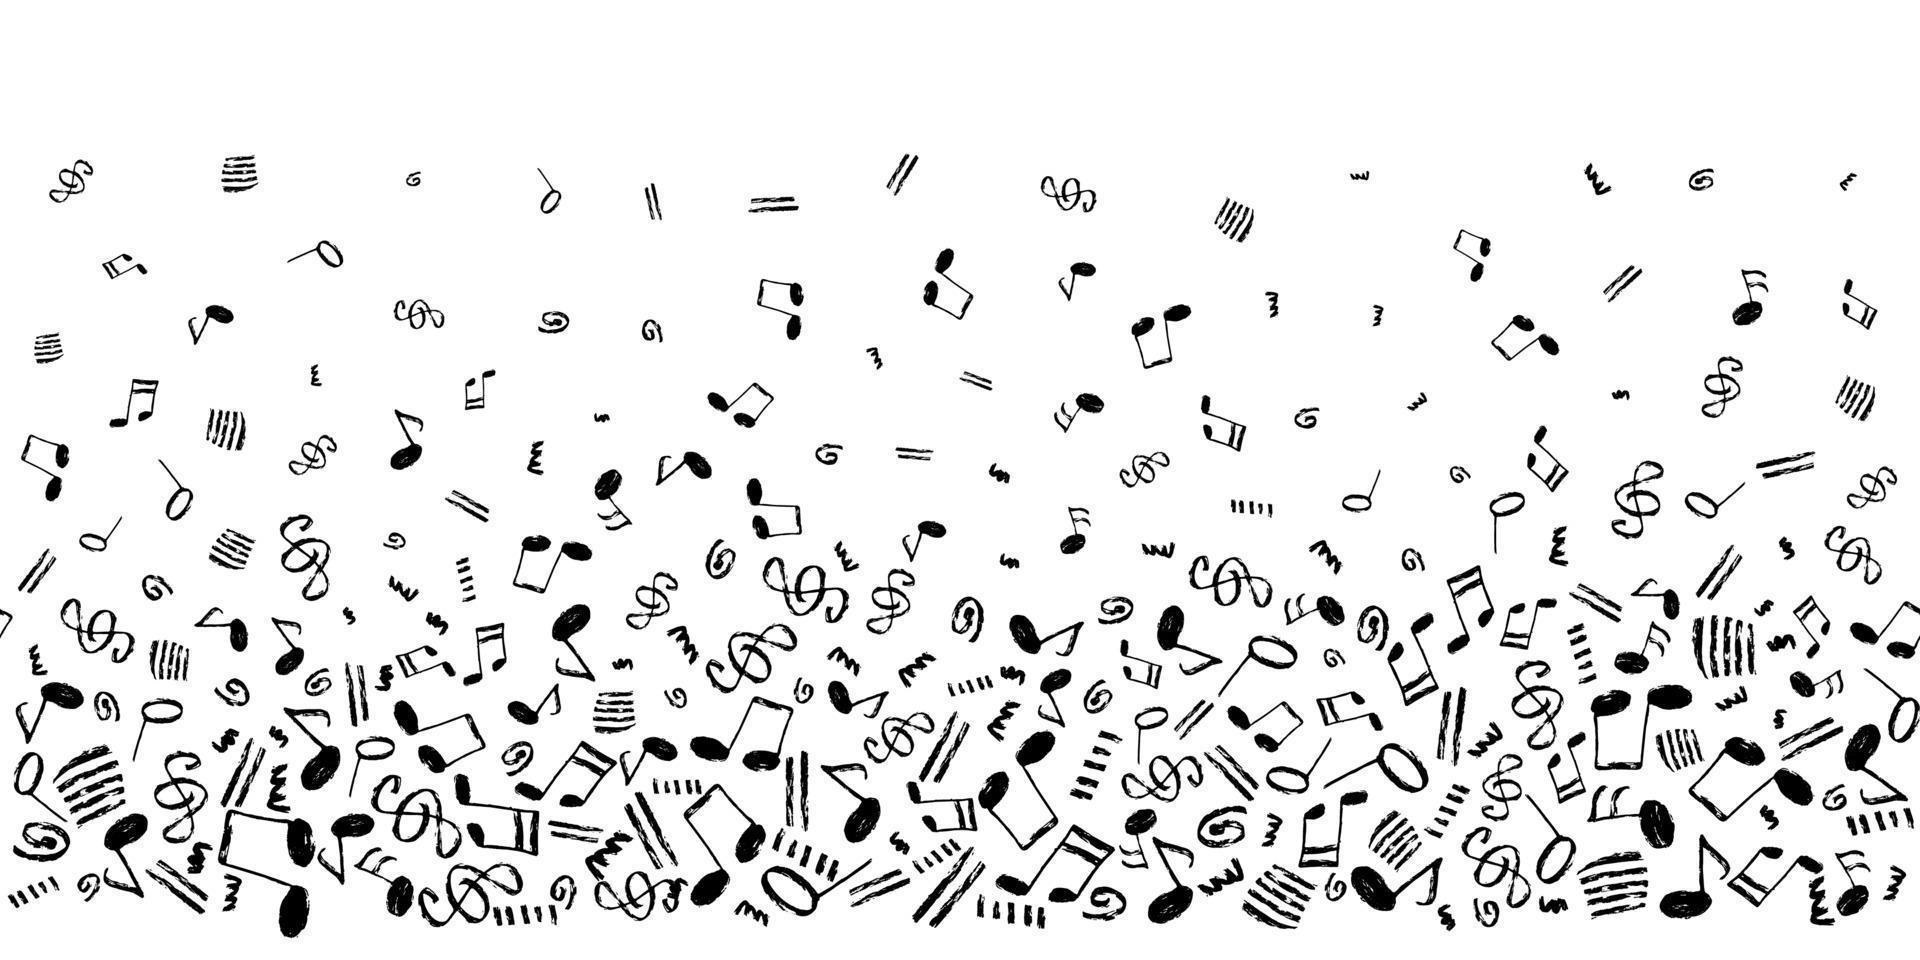 Musiknoten Vektor nahtloser Hintergrund. horizontale vorlage mit einfarbigen schwarzen handgezeichneten musikalischen elementen grenzmuster.